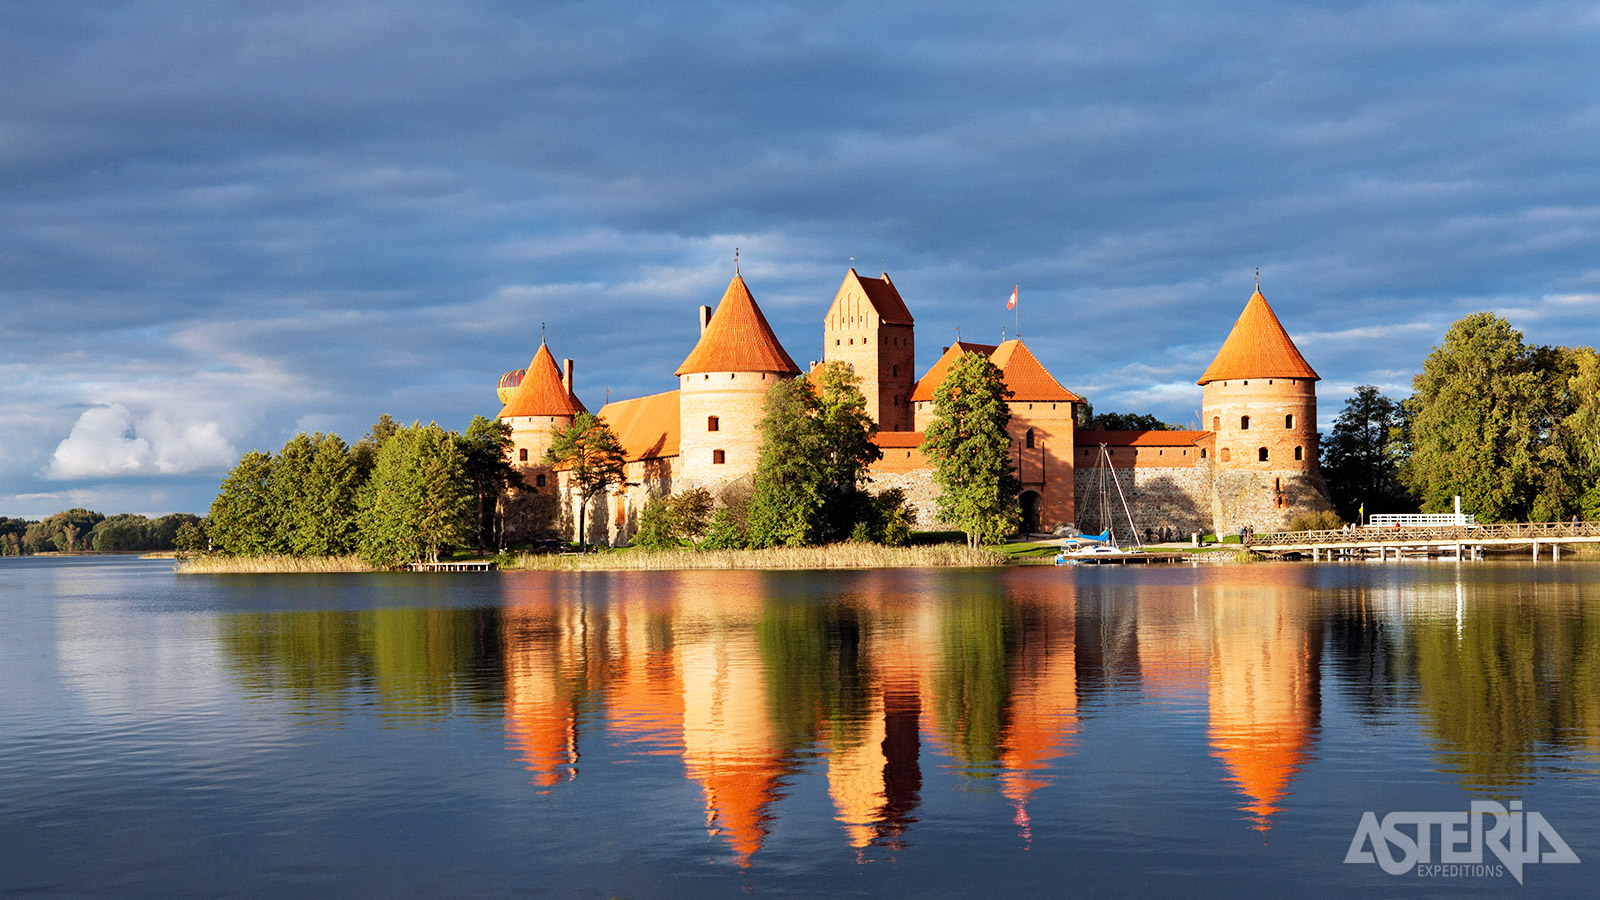 De rode dakpannen, steile torens en idyllische ligging zorgen ervoor dat het Trakai kasteel  zo uit een sprookje lijkt te komen